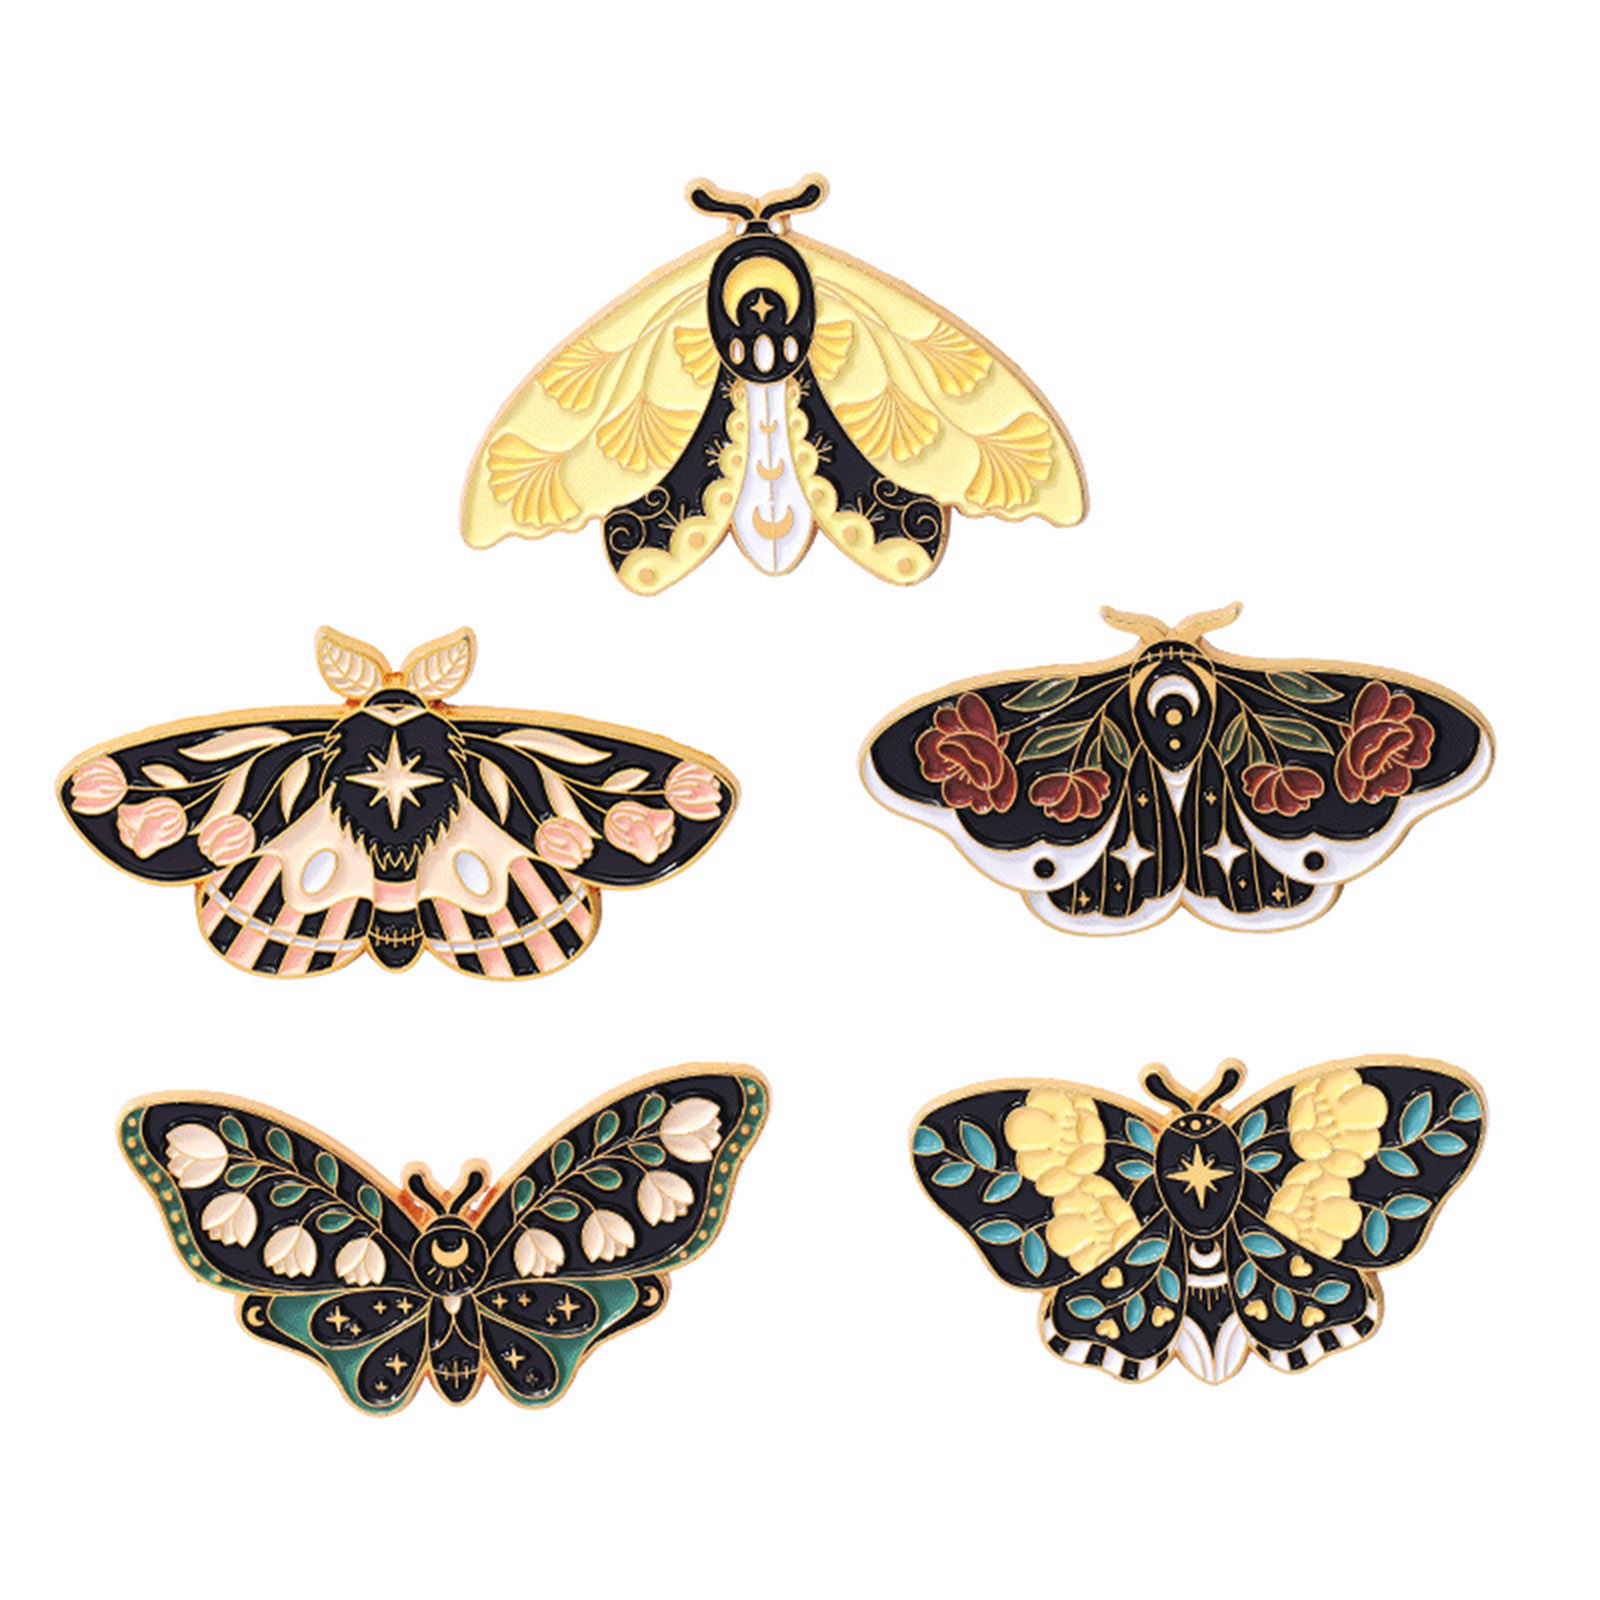 Bild von Insekt Brosche Schmetterling Vergoldet Bunt Emaille 1 Stück